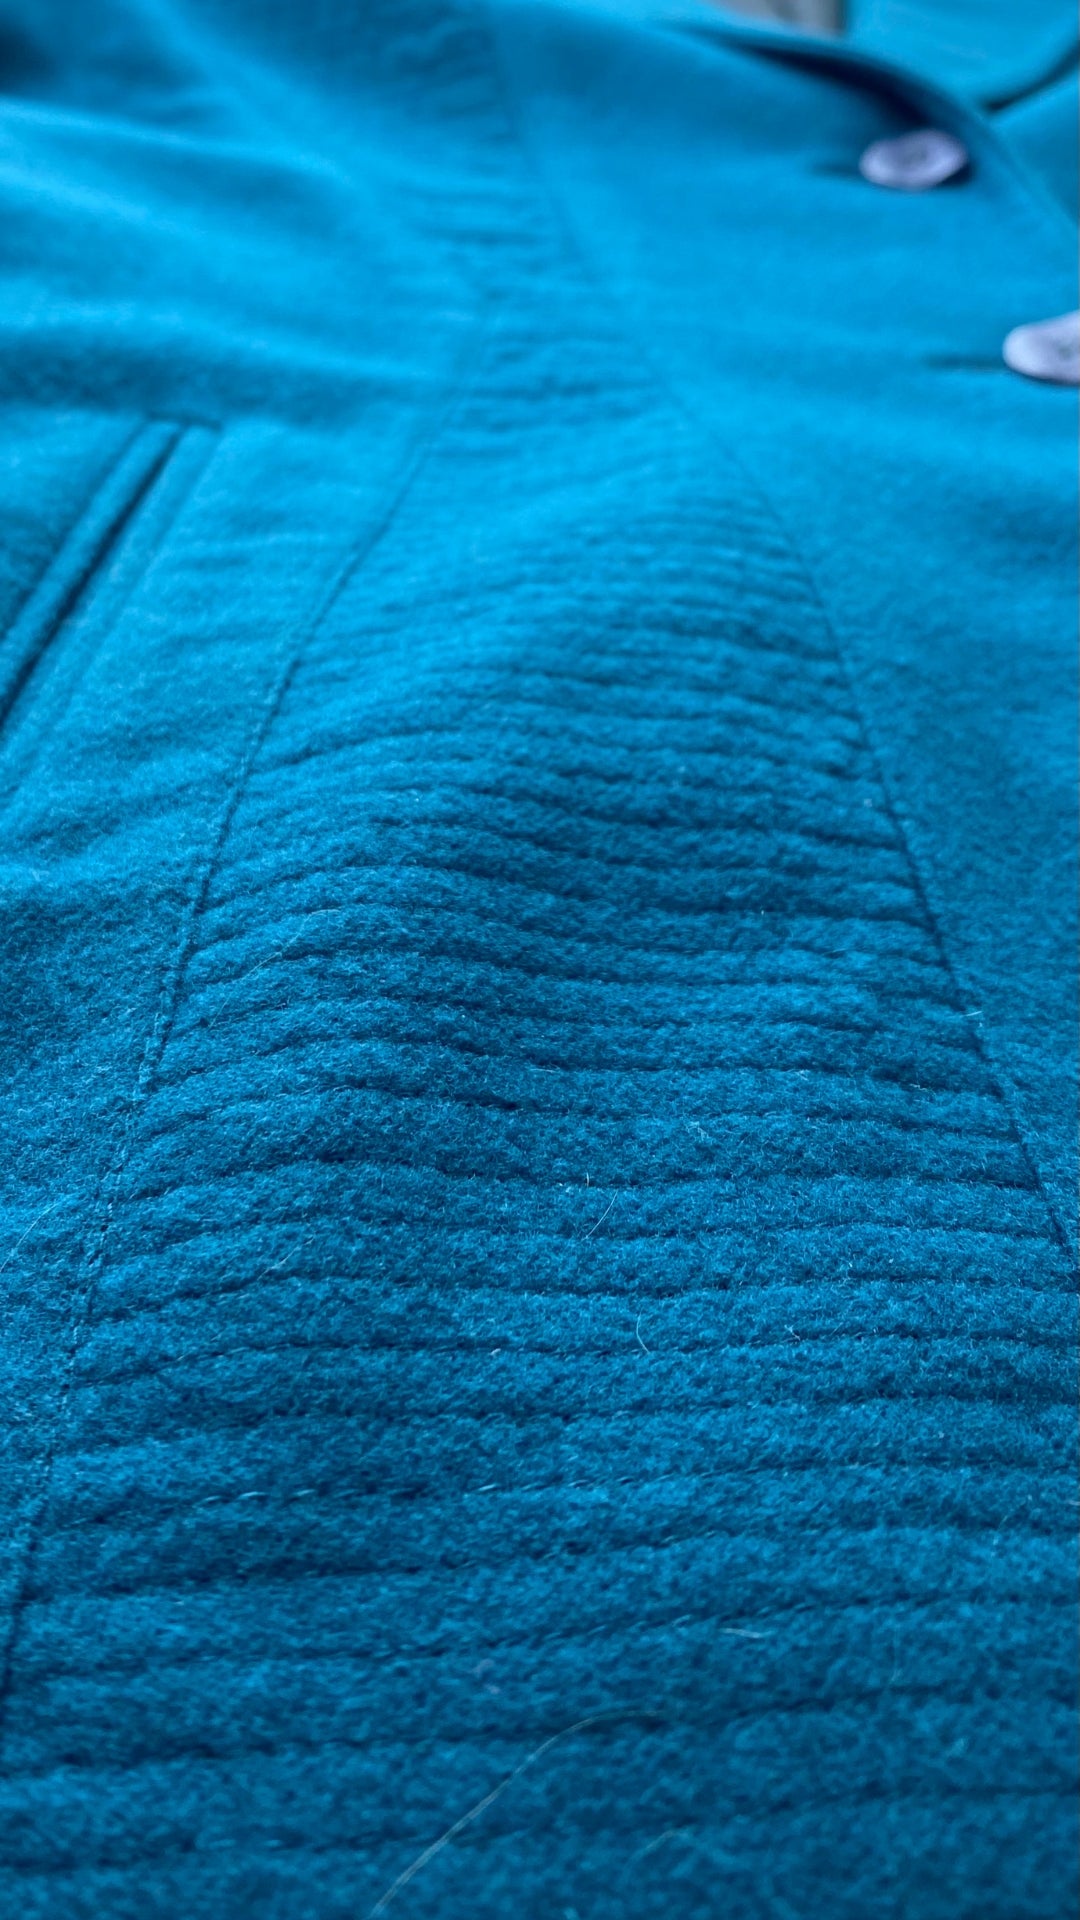 Blazer hivernal sarcelle en mélange de laine et cachemire Jean-Claude Poitras, taille 10. Vue de près du tissu et de ses détails.